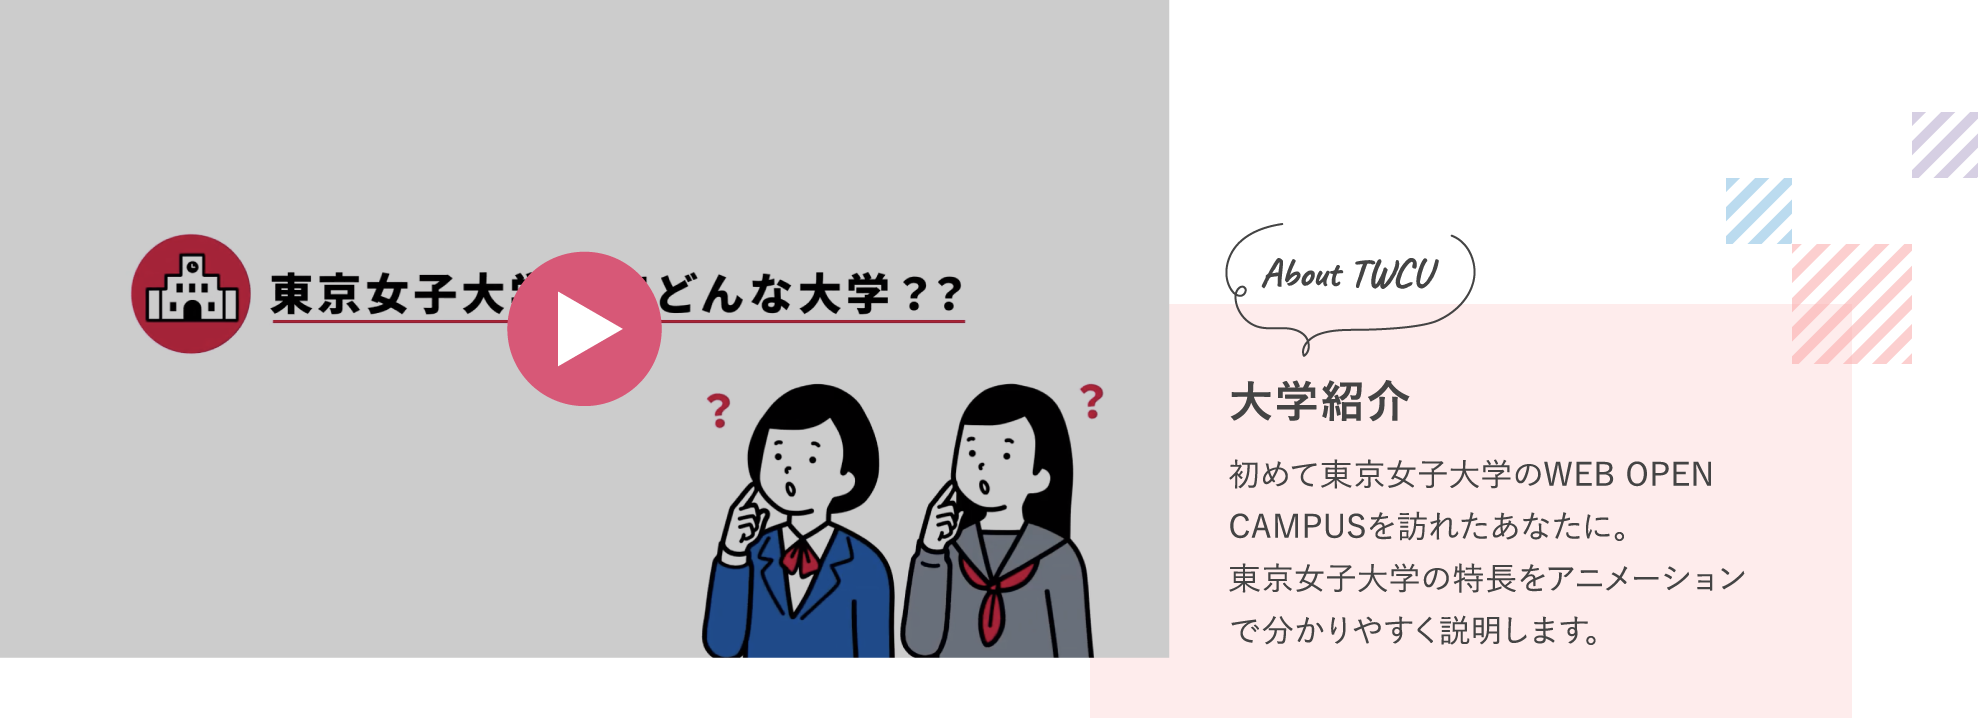 東京女子大学の特徴をアニメーションでわかりやすく説明